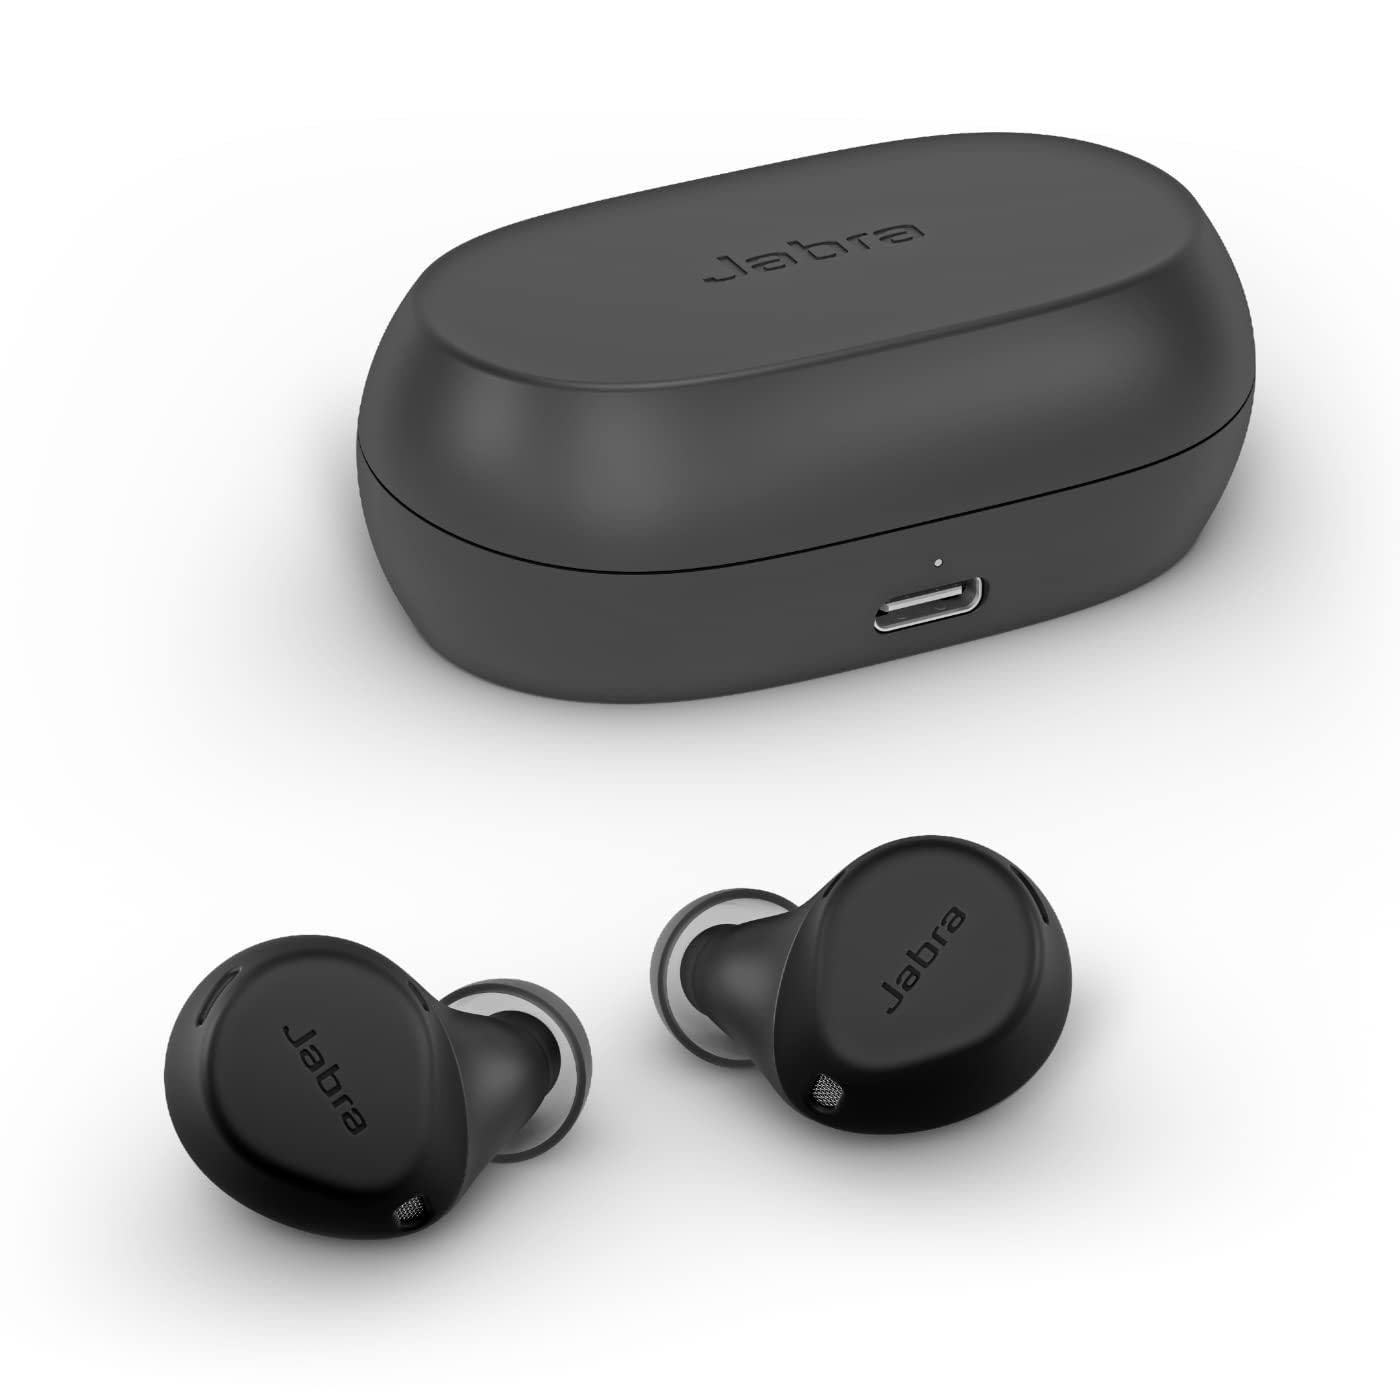  Jabra سماعات الأذن Elite 7 Pro داخل الأذن بتقنية البلوتوث - سماعات لاسلكية حقيقية قابلة للتعديل لإلغاء الضوضاء النشط...